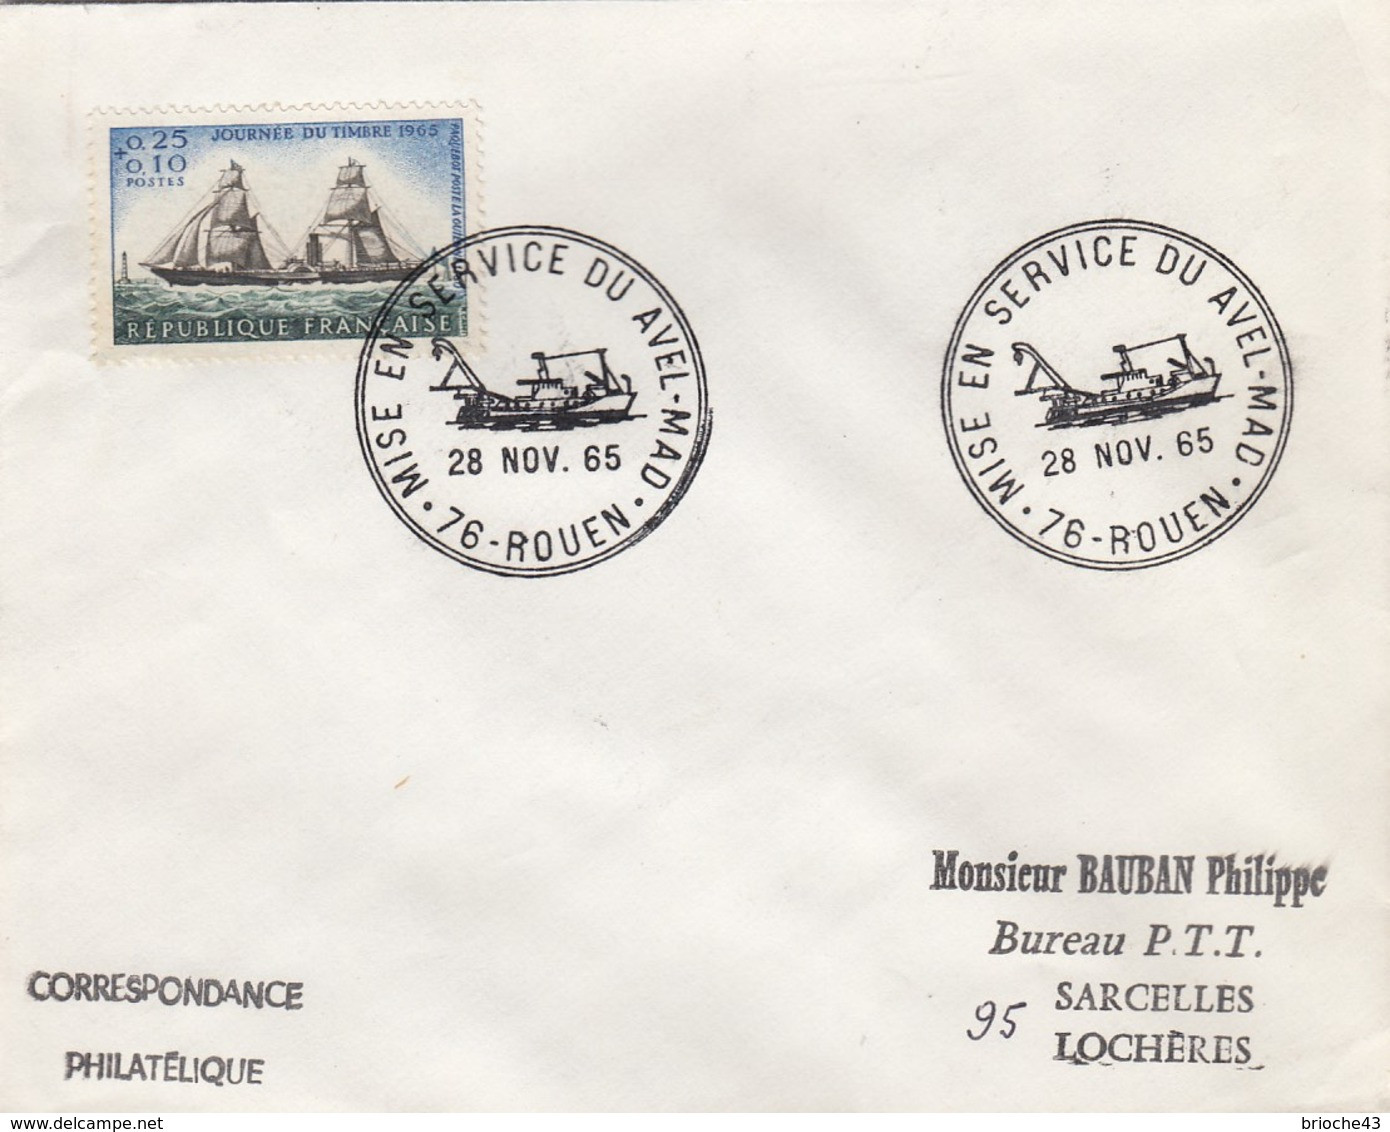 FRANCE - LETTRE JOURNEE TIMBRE 1965   - CACHET ROND MISE EN SERVICE DU AVEL-MAD 28.11.65 ROUEN 76 + VERSO  / 6907 - Briefe U. Dokumente